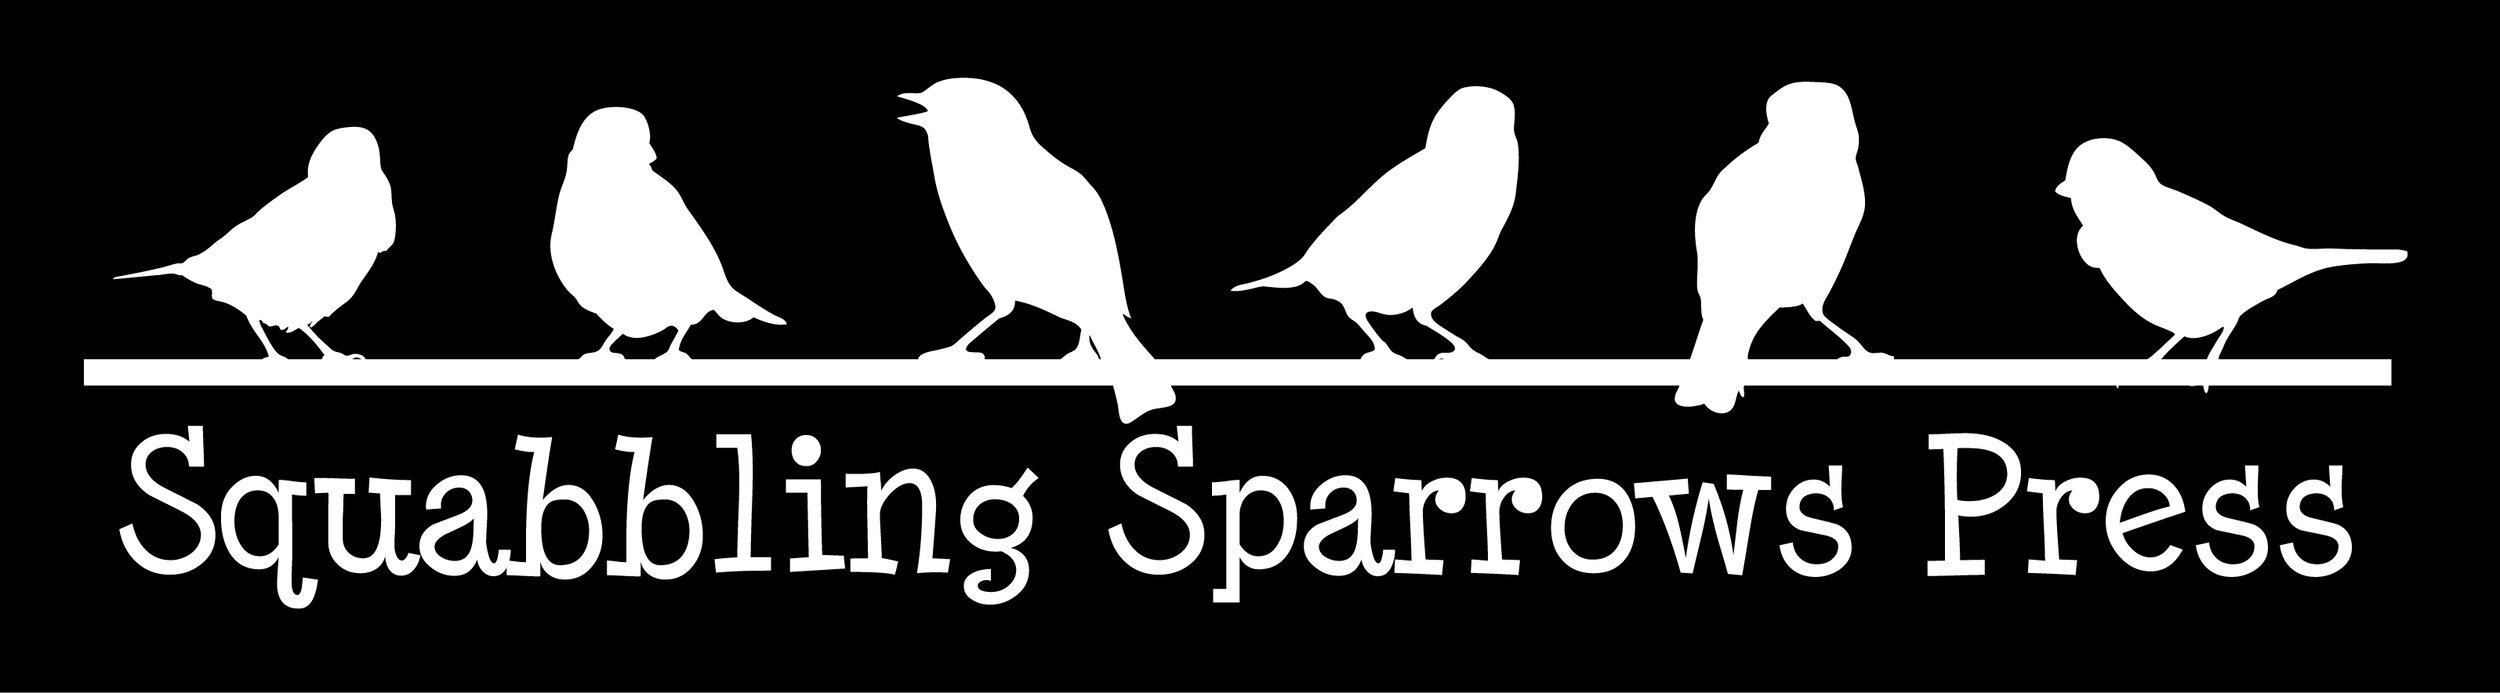 Squabbling Sparrows Press